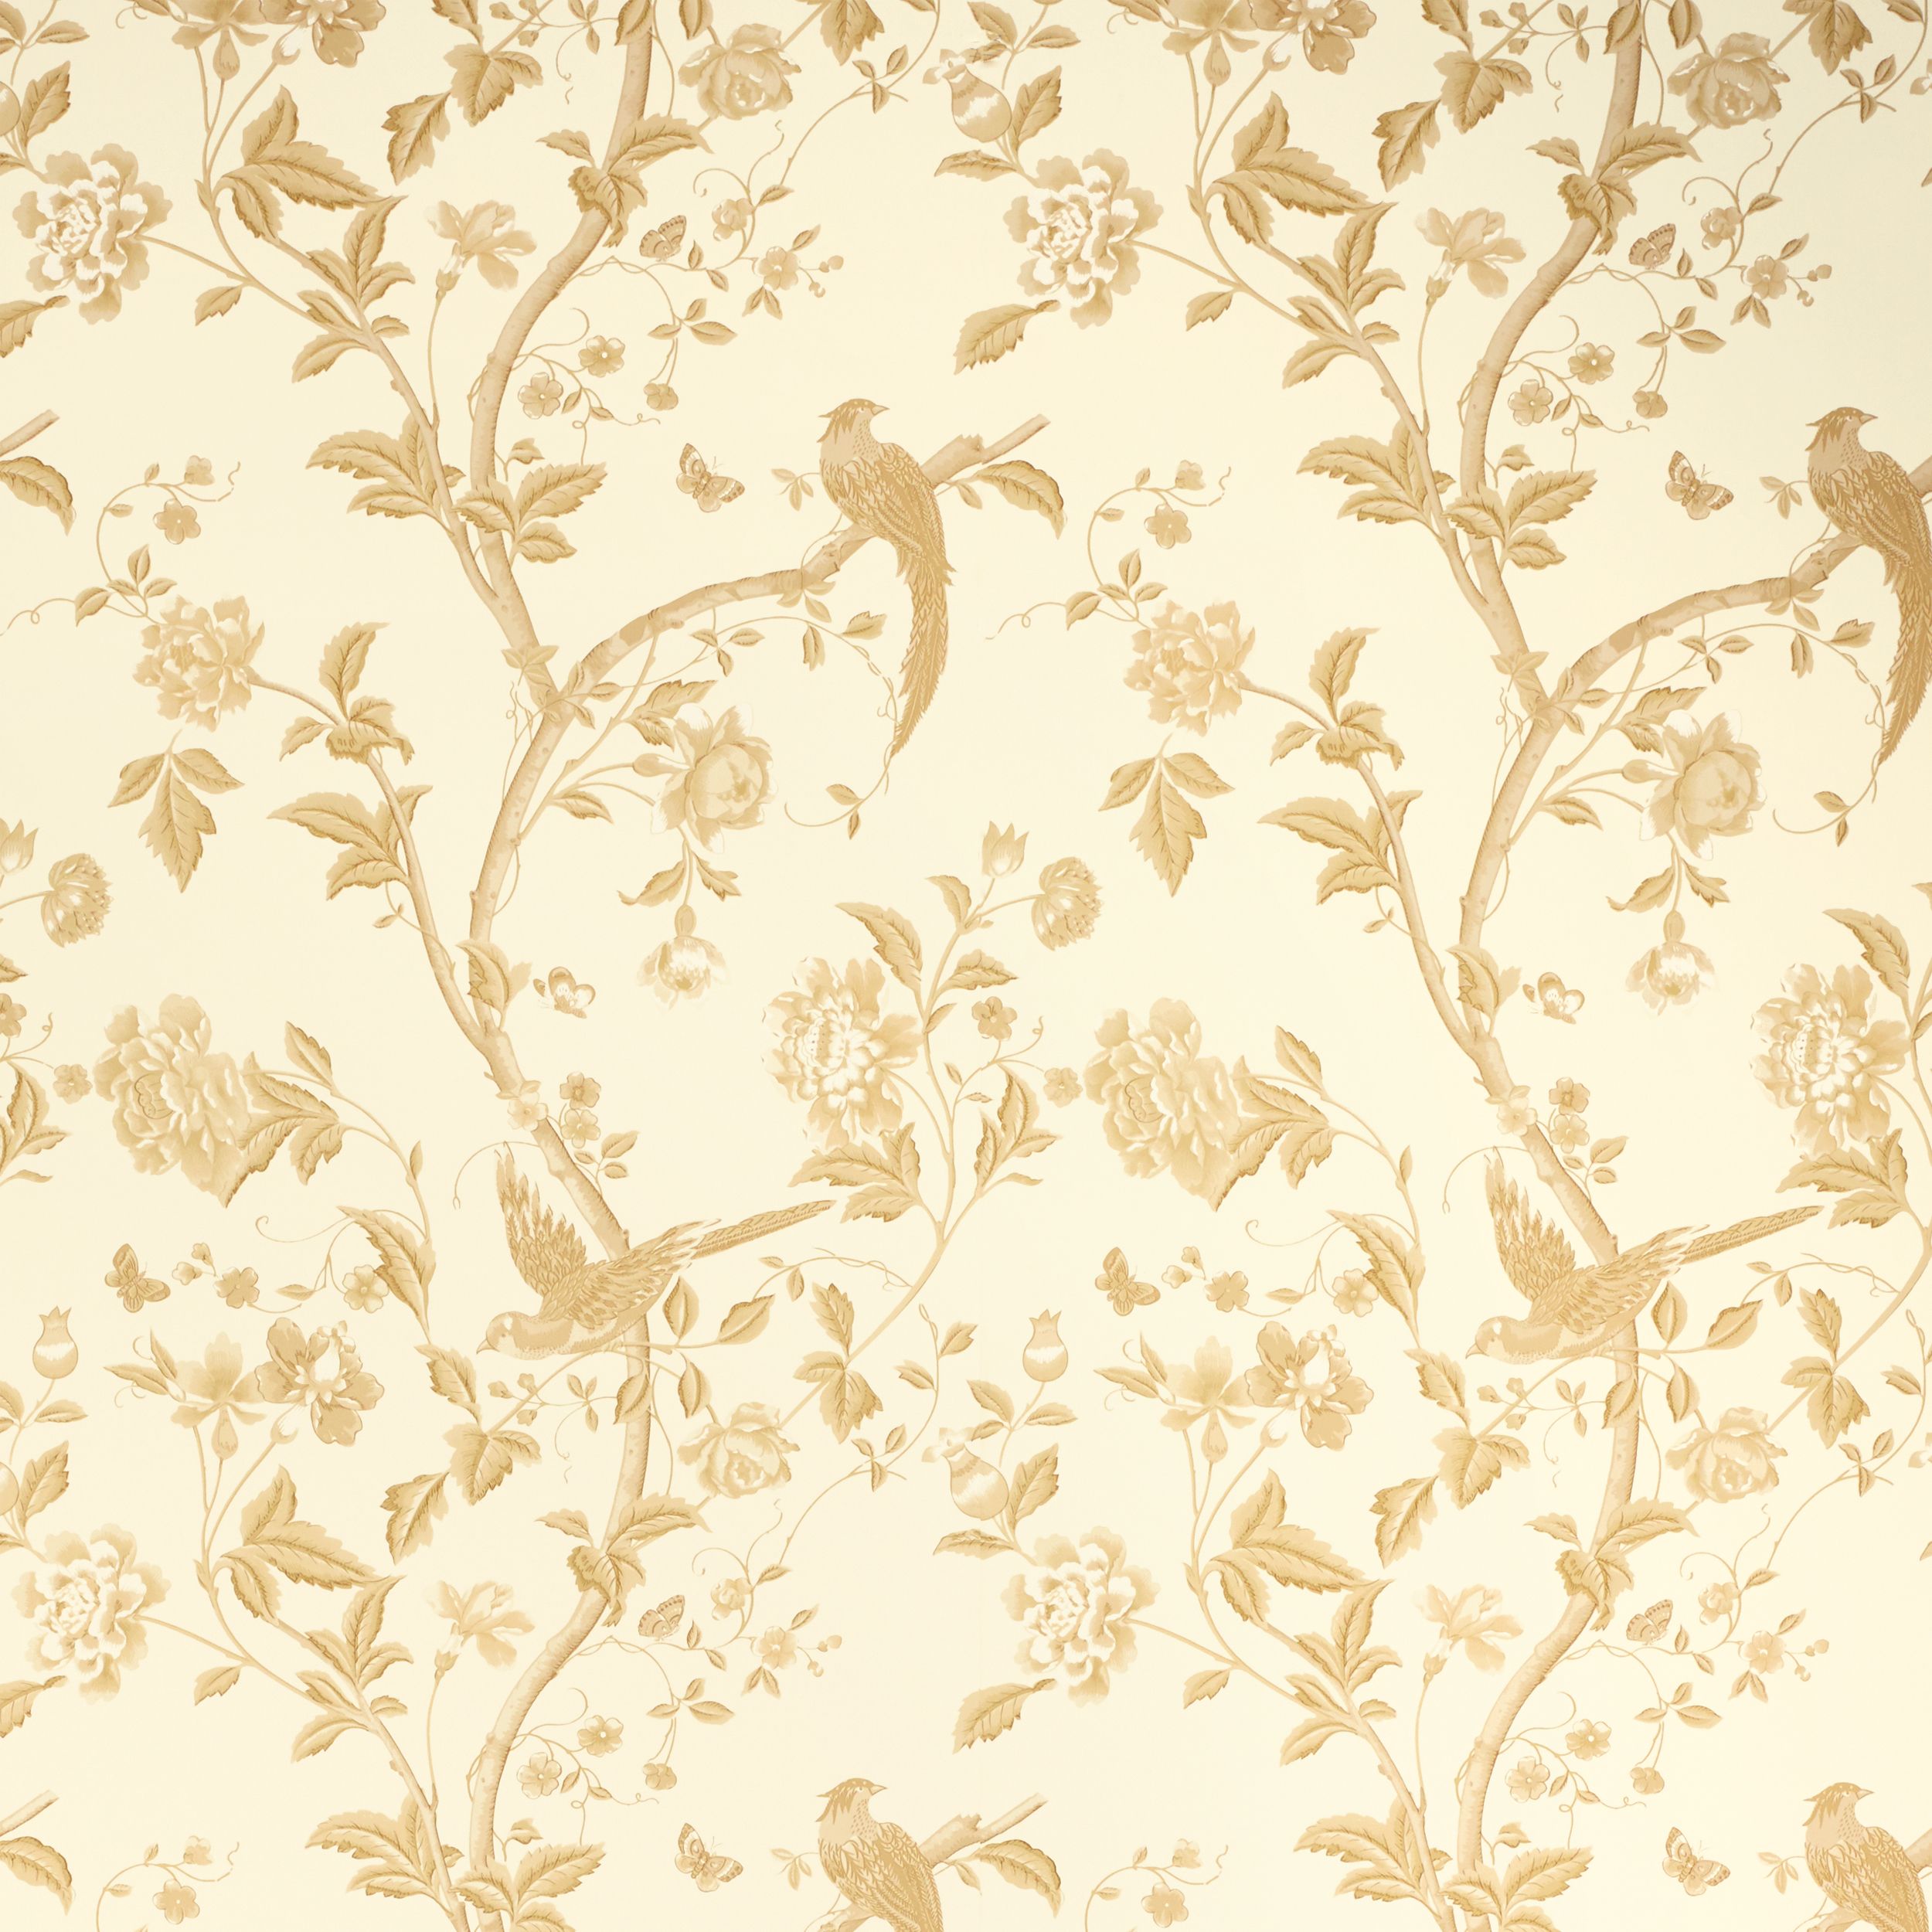 Plain Surface Vertical And Horizontal Golden Flower 3D Wallpaper